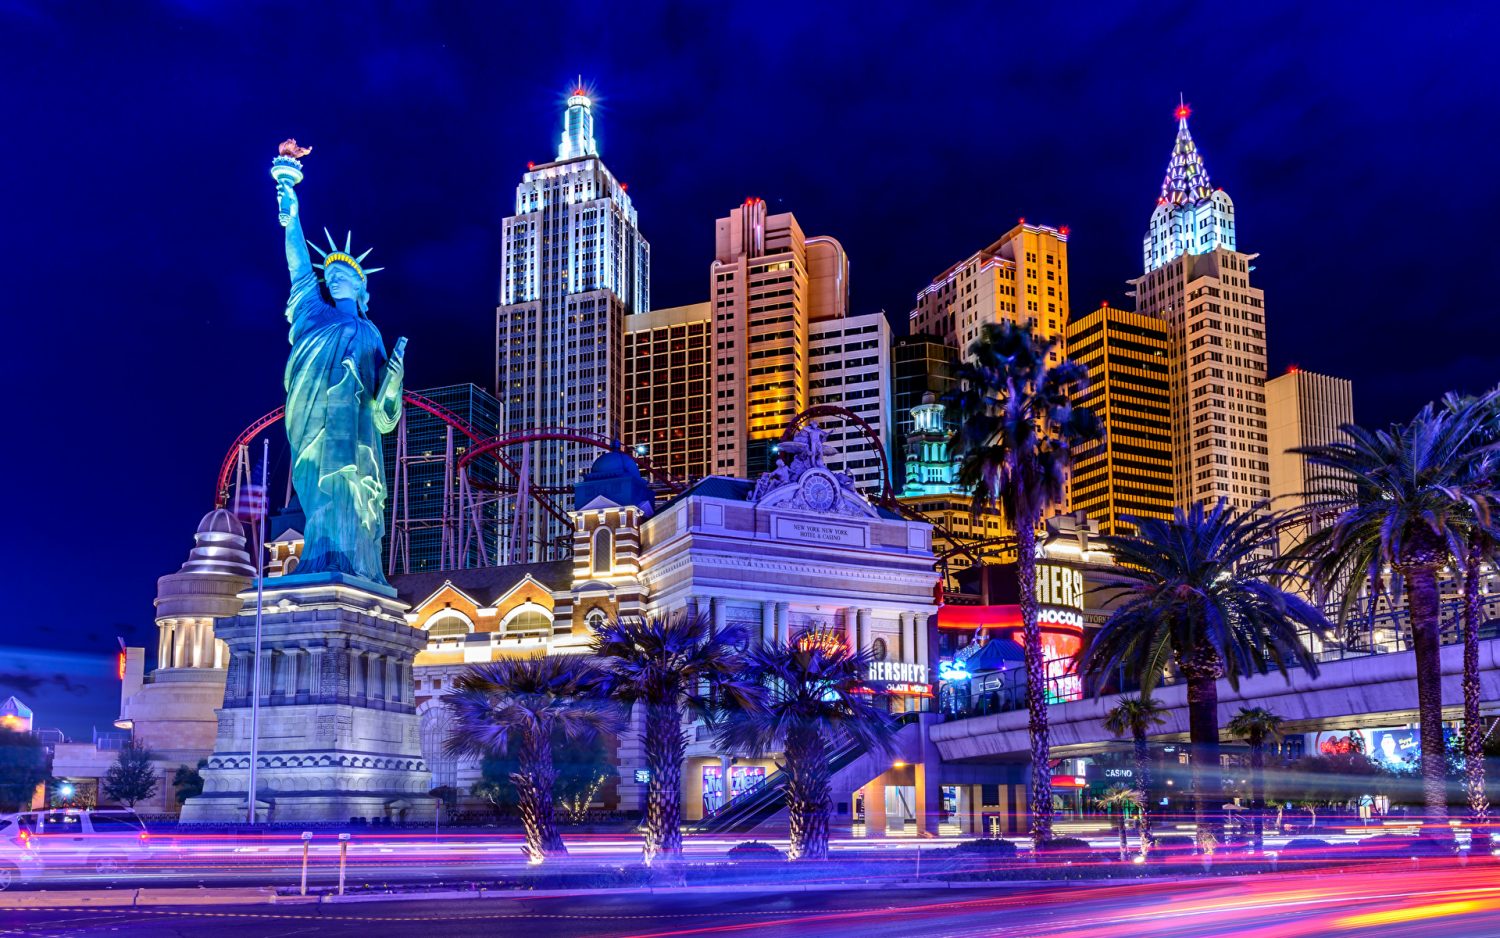 New York – New York Hotel and Casino